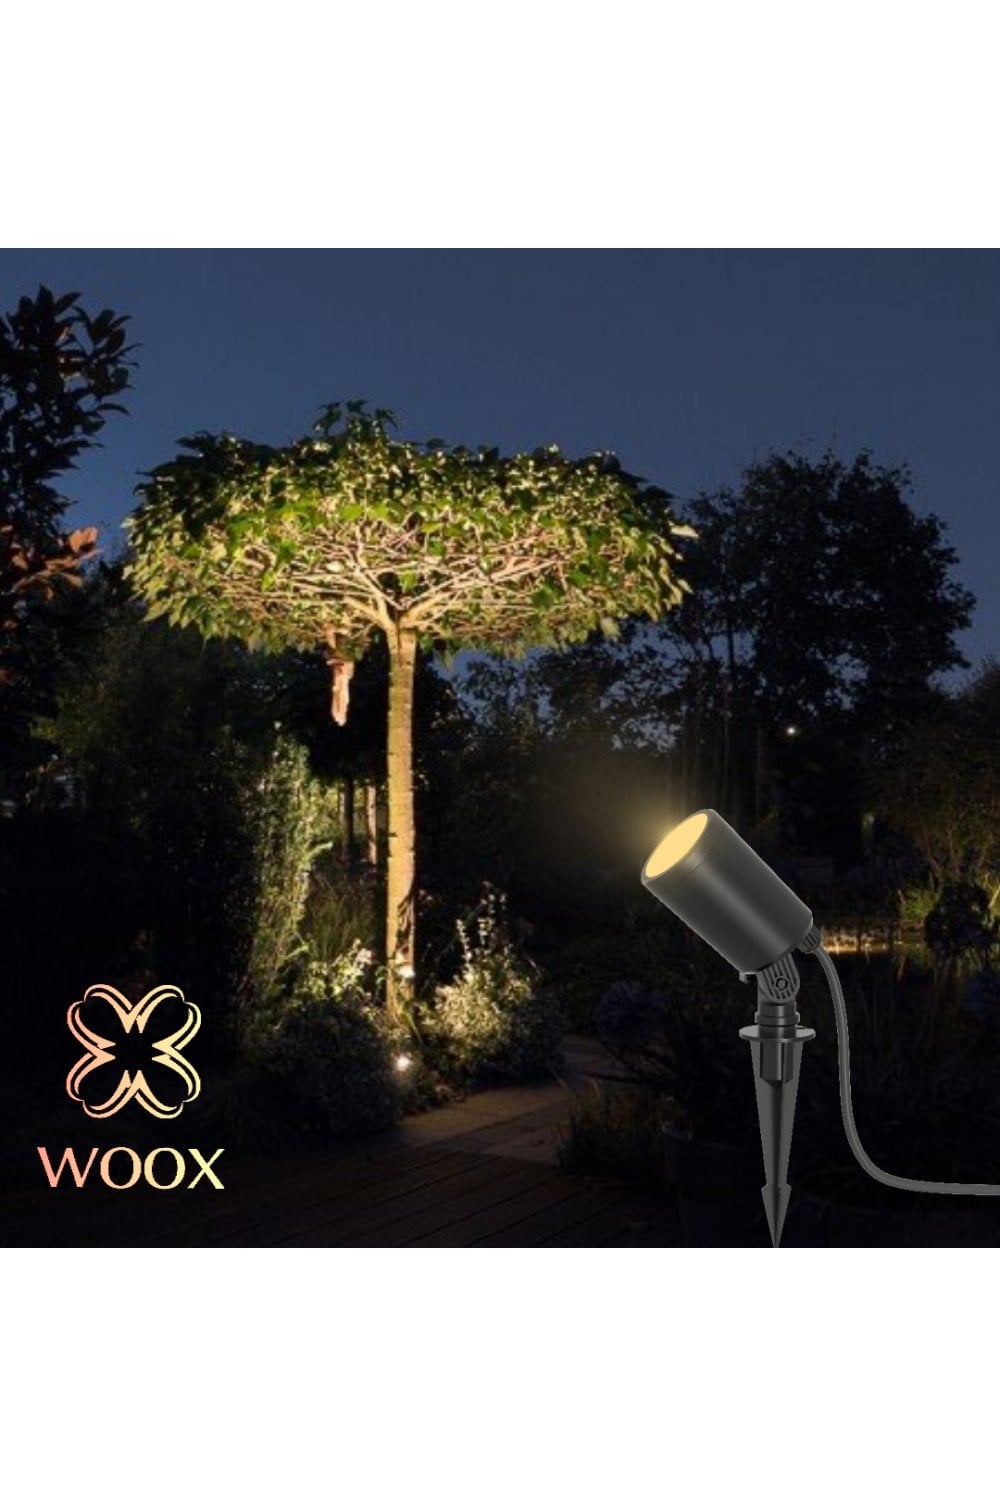 Holofote Inteligente Woox para Jardim